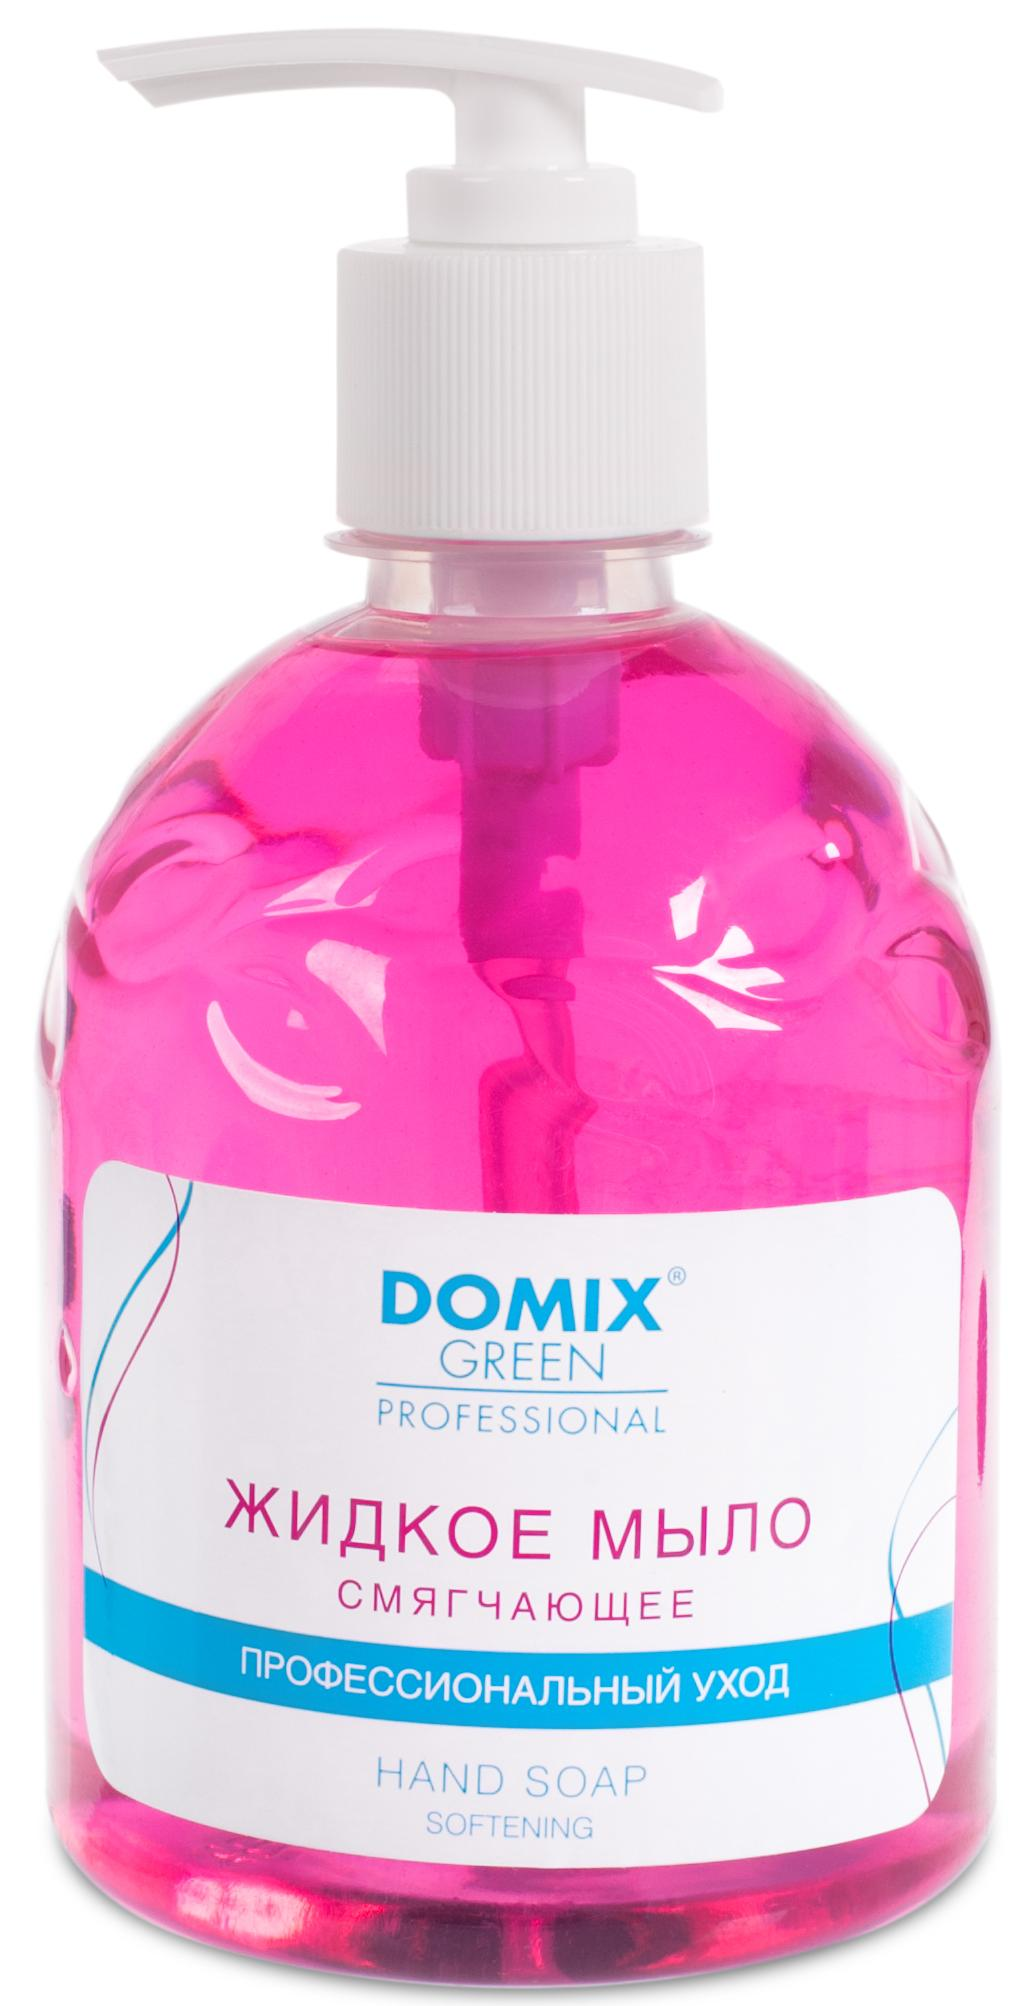 DOMIX Мыло жидкое смягчающее для профессионального ухода / DGP 500 мл domix мыло жидкое смягчающее для профессионального ухода dgp 500 мл